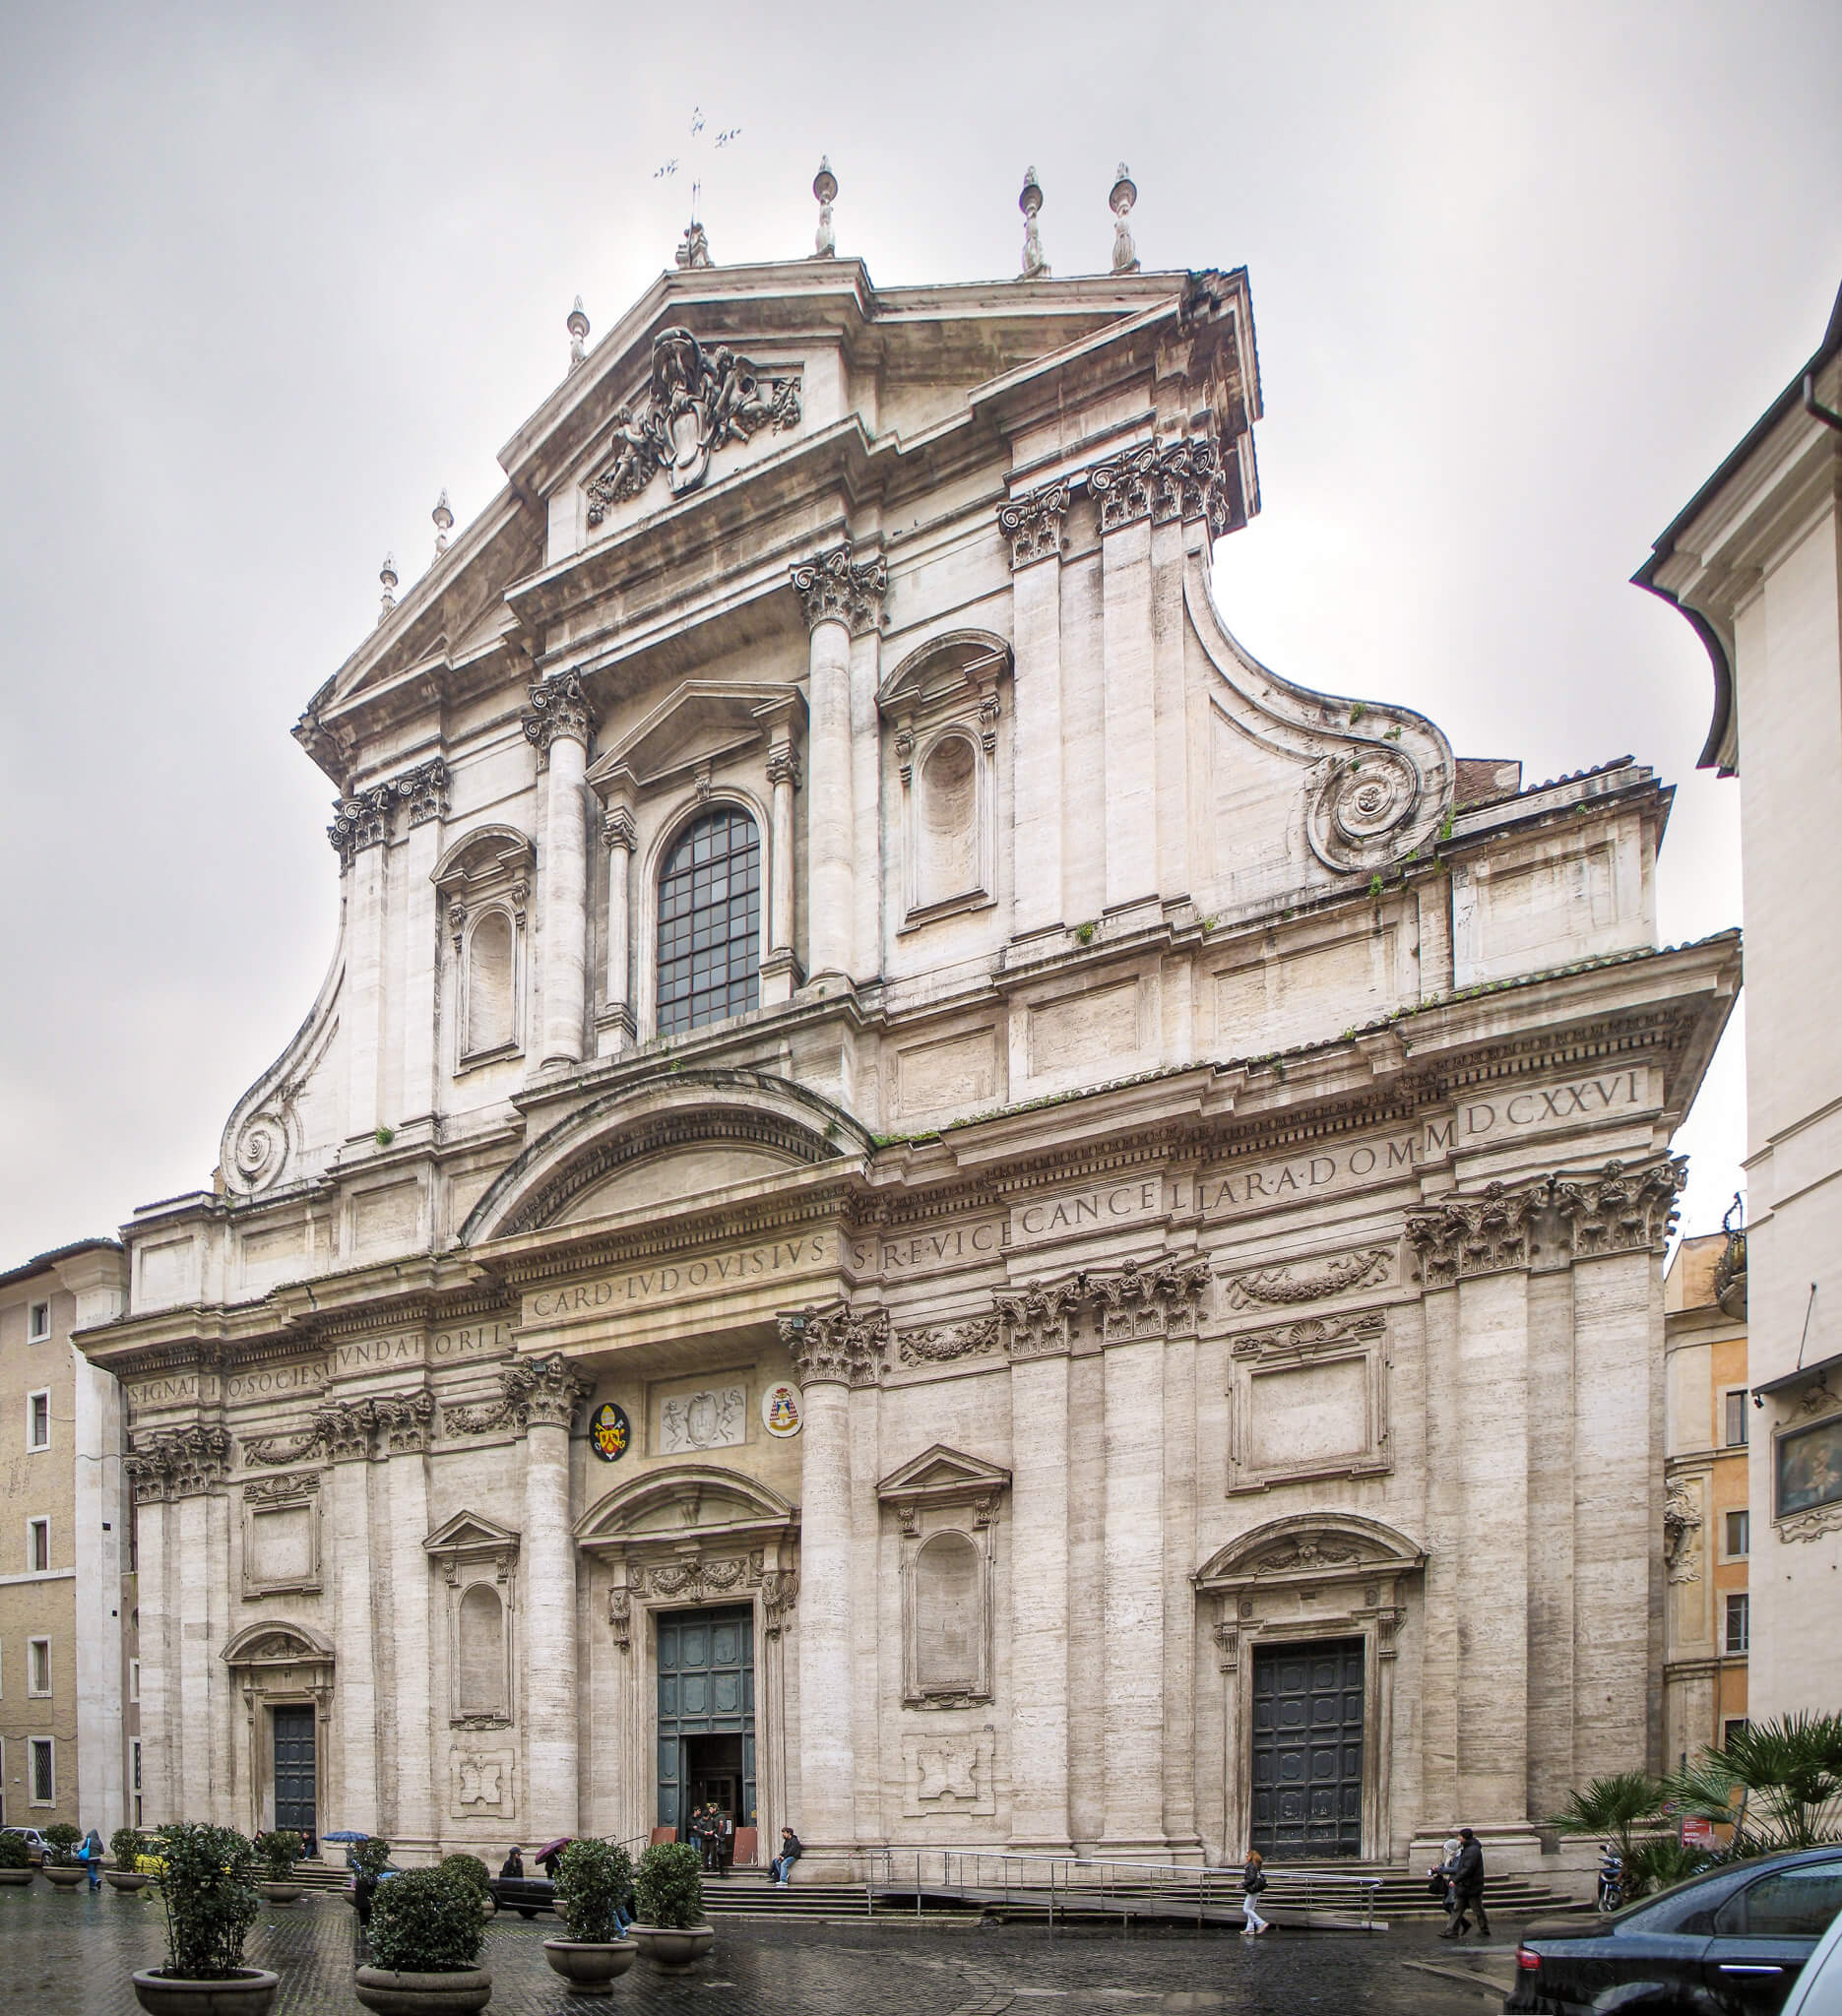 Exterior facade of Sant'Ignazio church in Rome